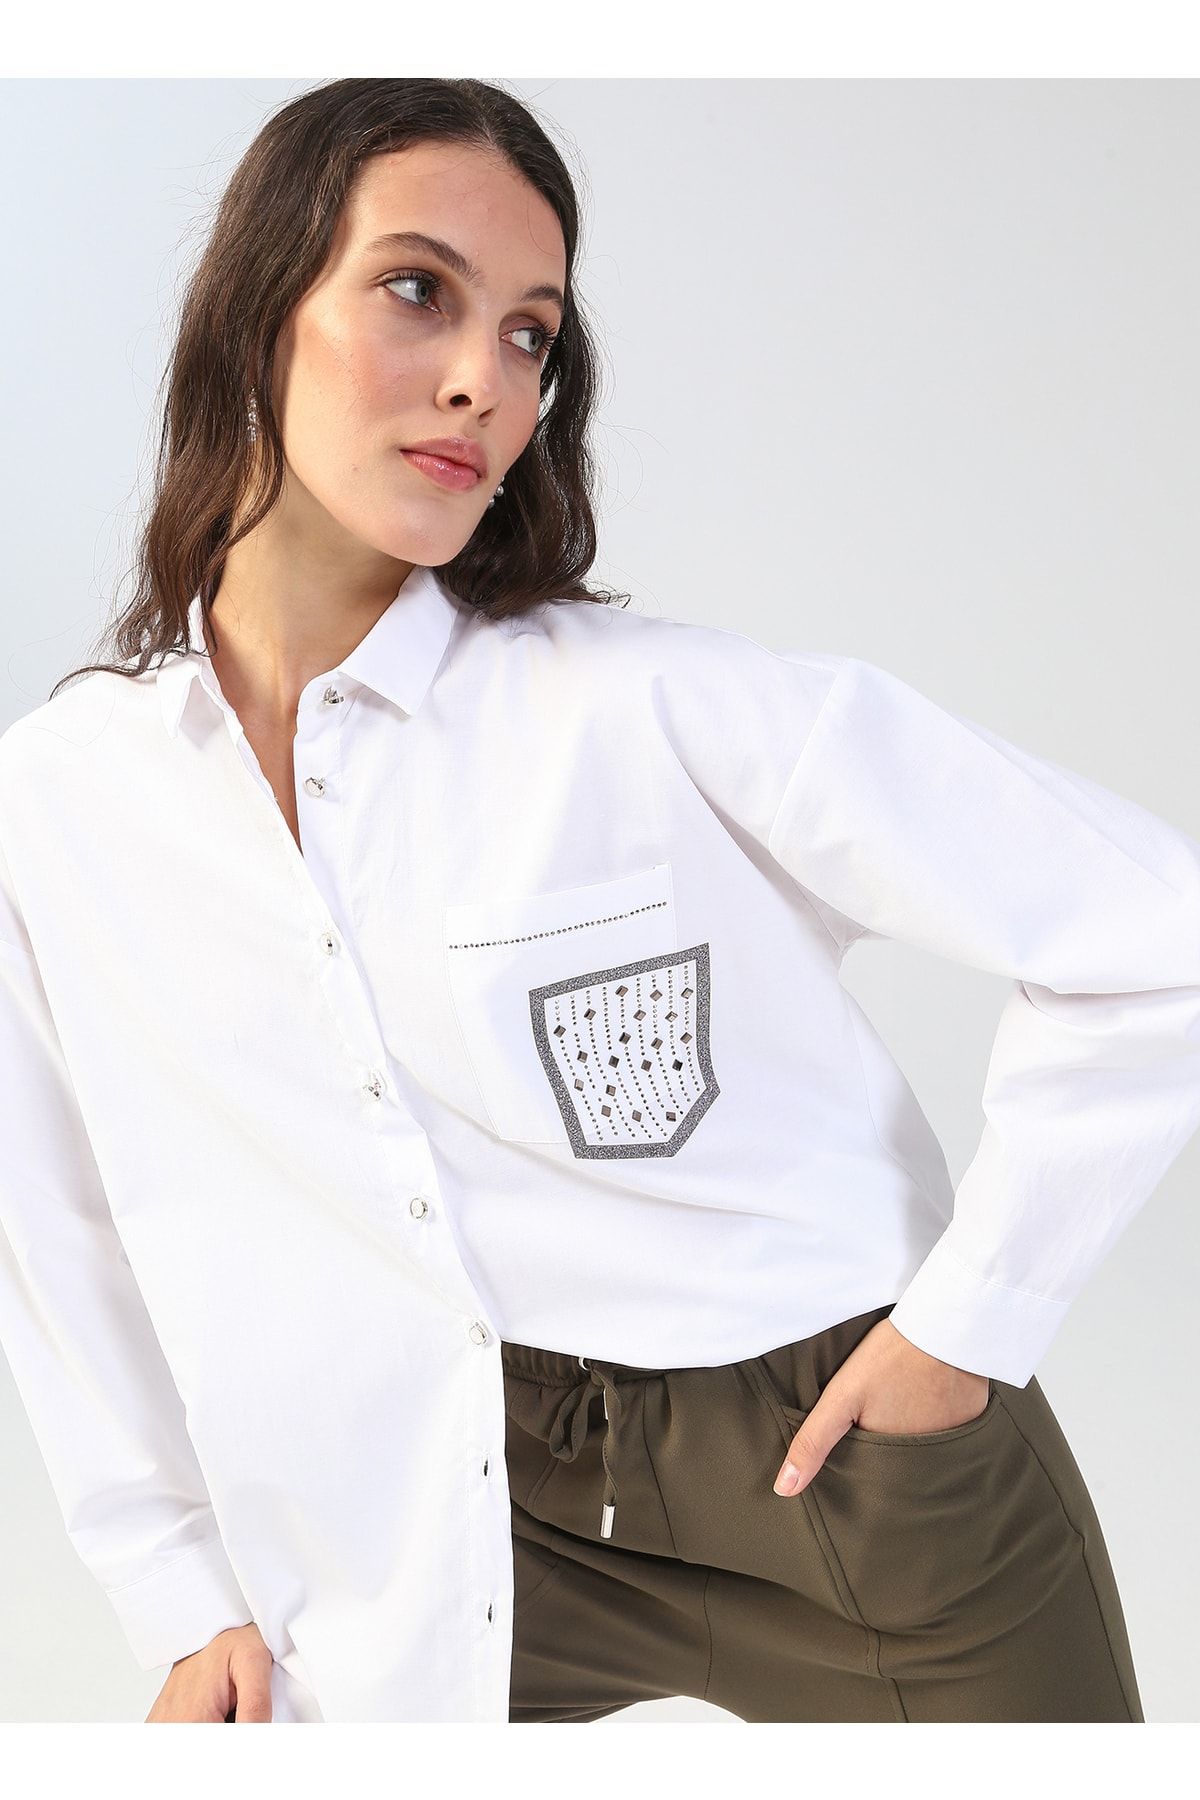 Fabrika Comfort Gömlek Yaka Düz Beyaz Kadın Gömlek Cm-marek